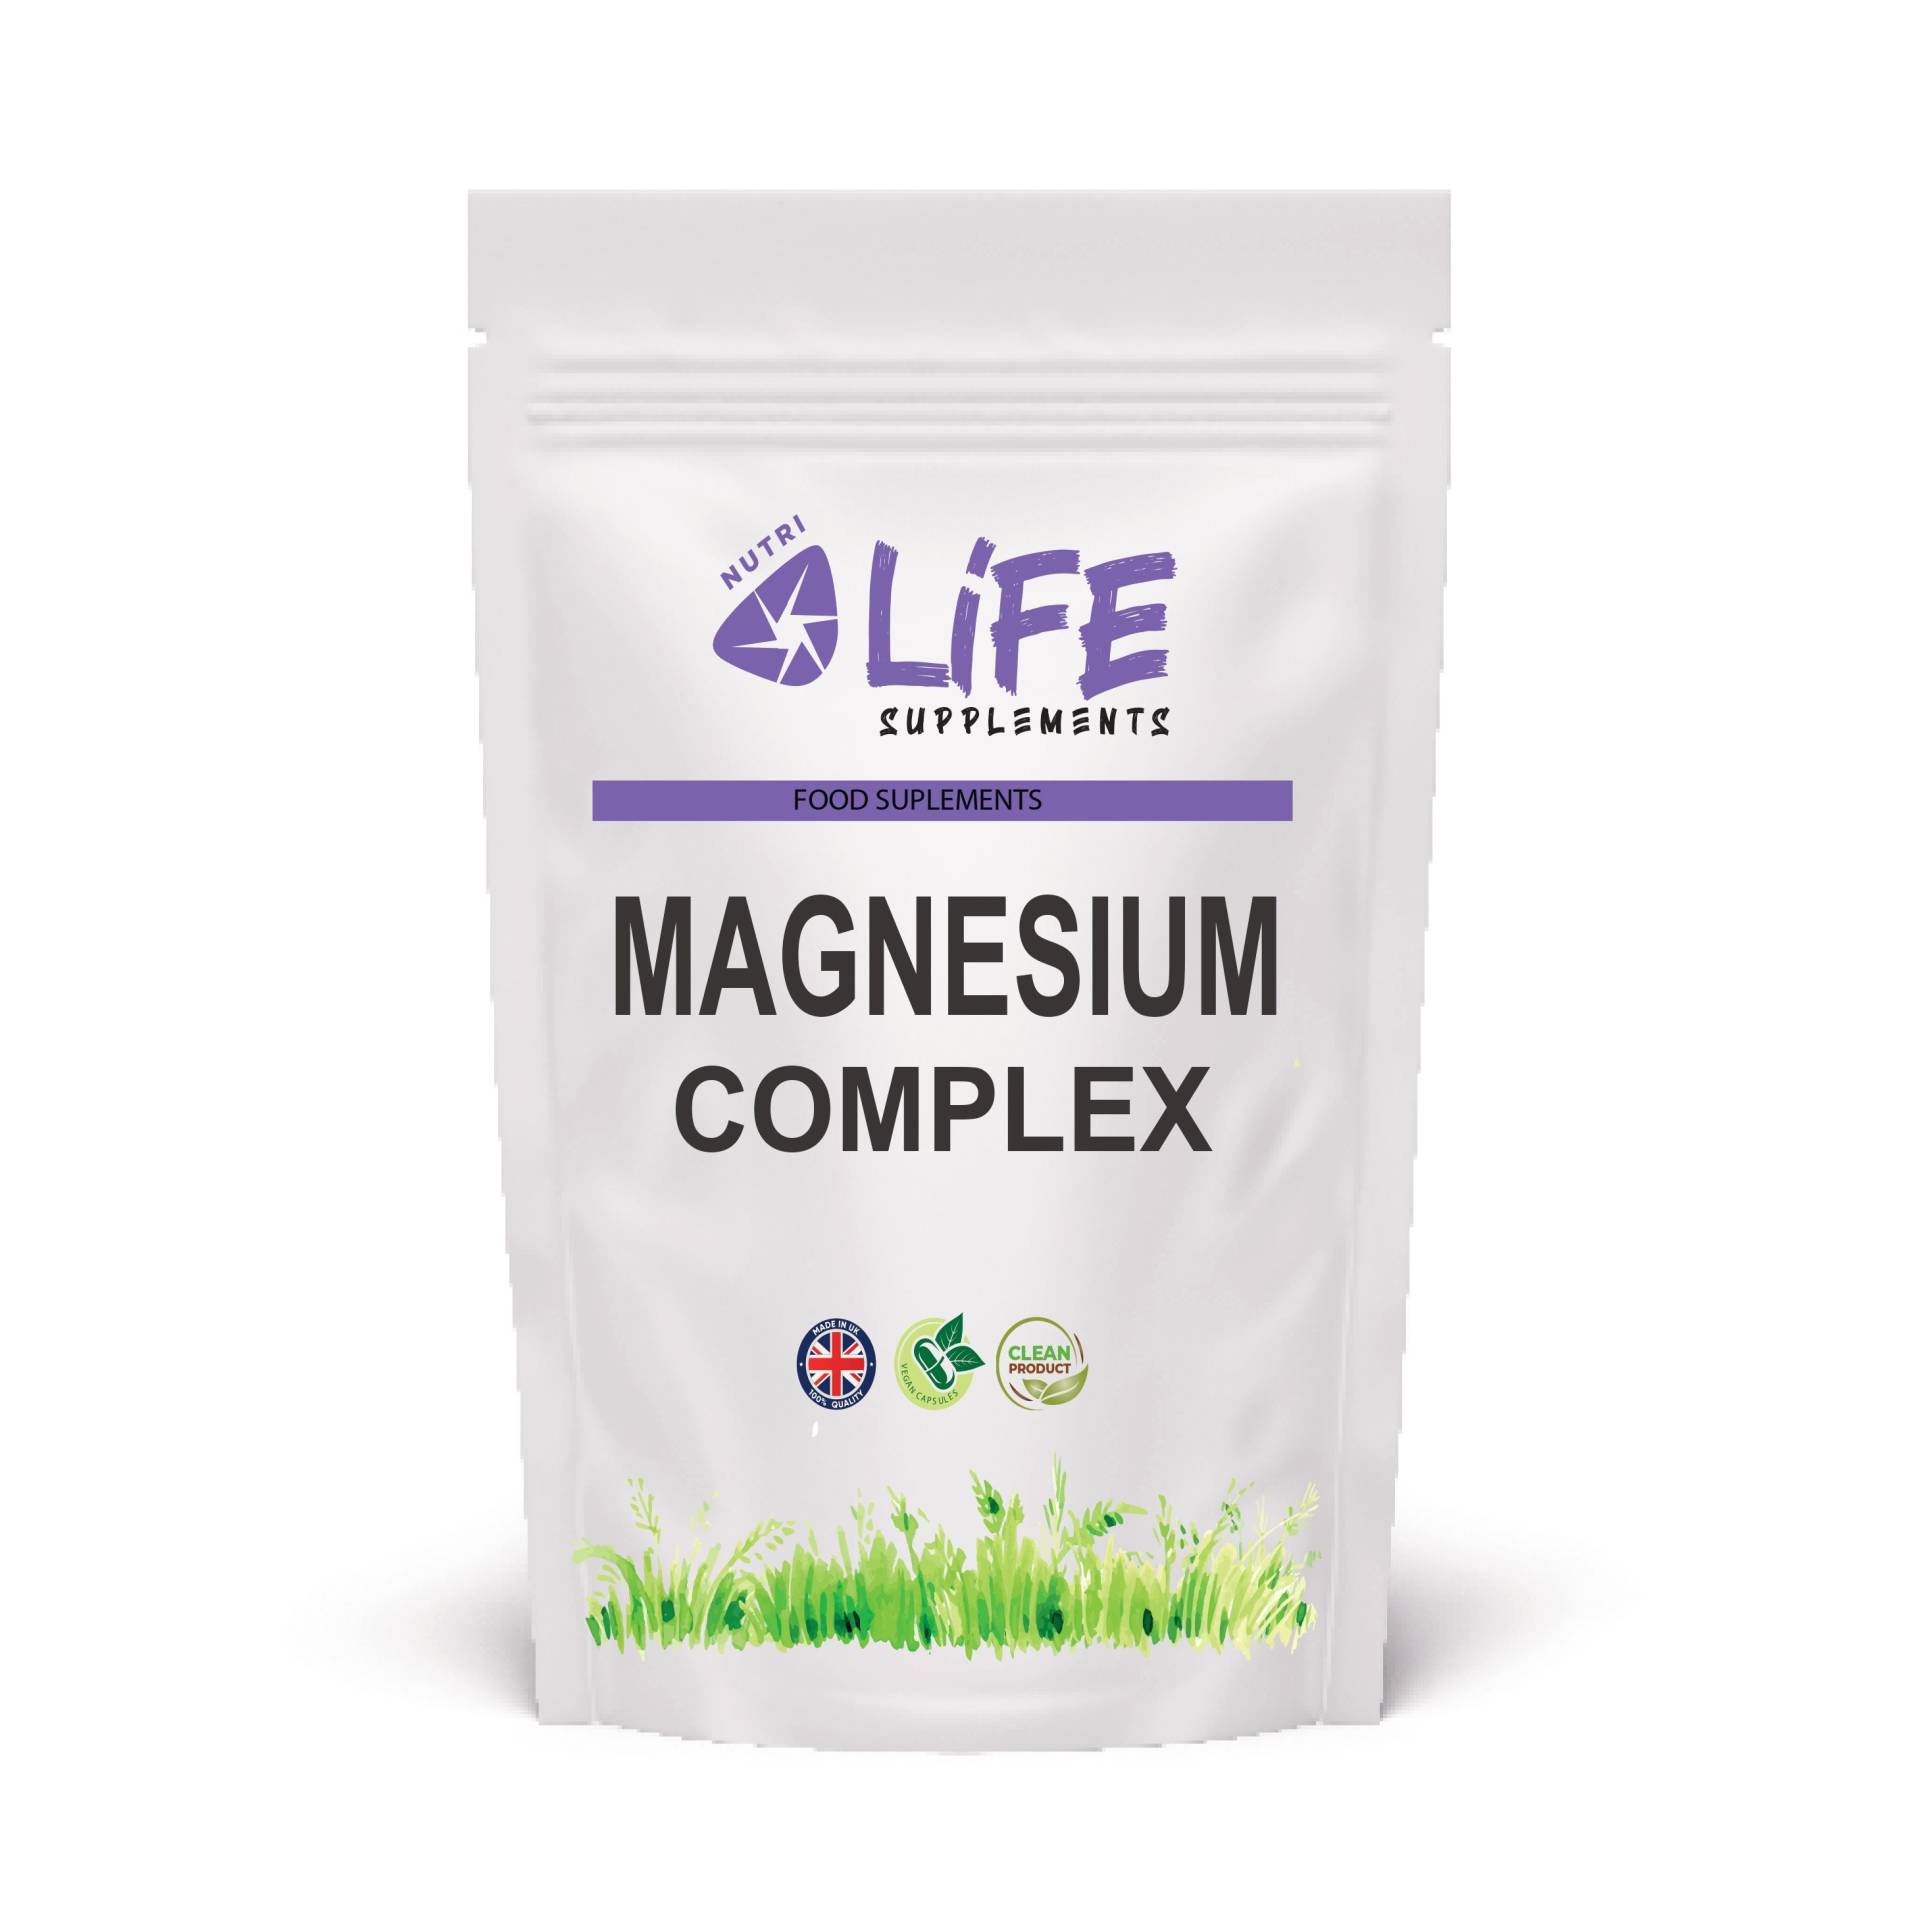 Sauberer Echter Magnesiumkomplex 560Mg Magnesiumcitrat Zink Vitamind3 Vitamin B6 Starke & Effektive Formel Ergänzung von NutriLifeSupplements